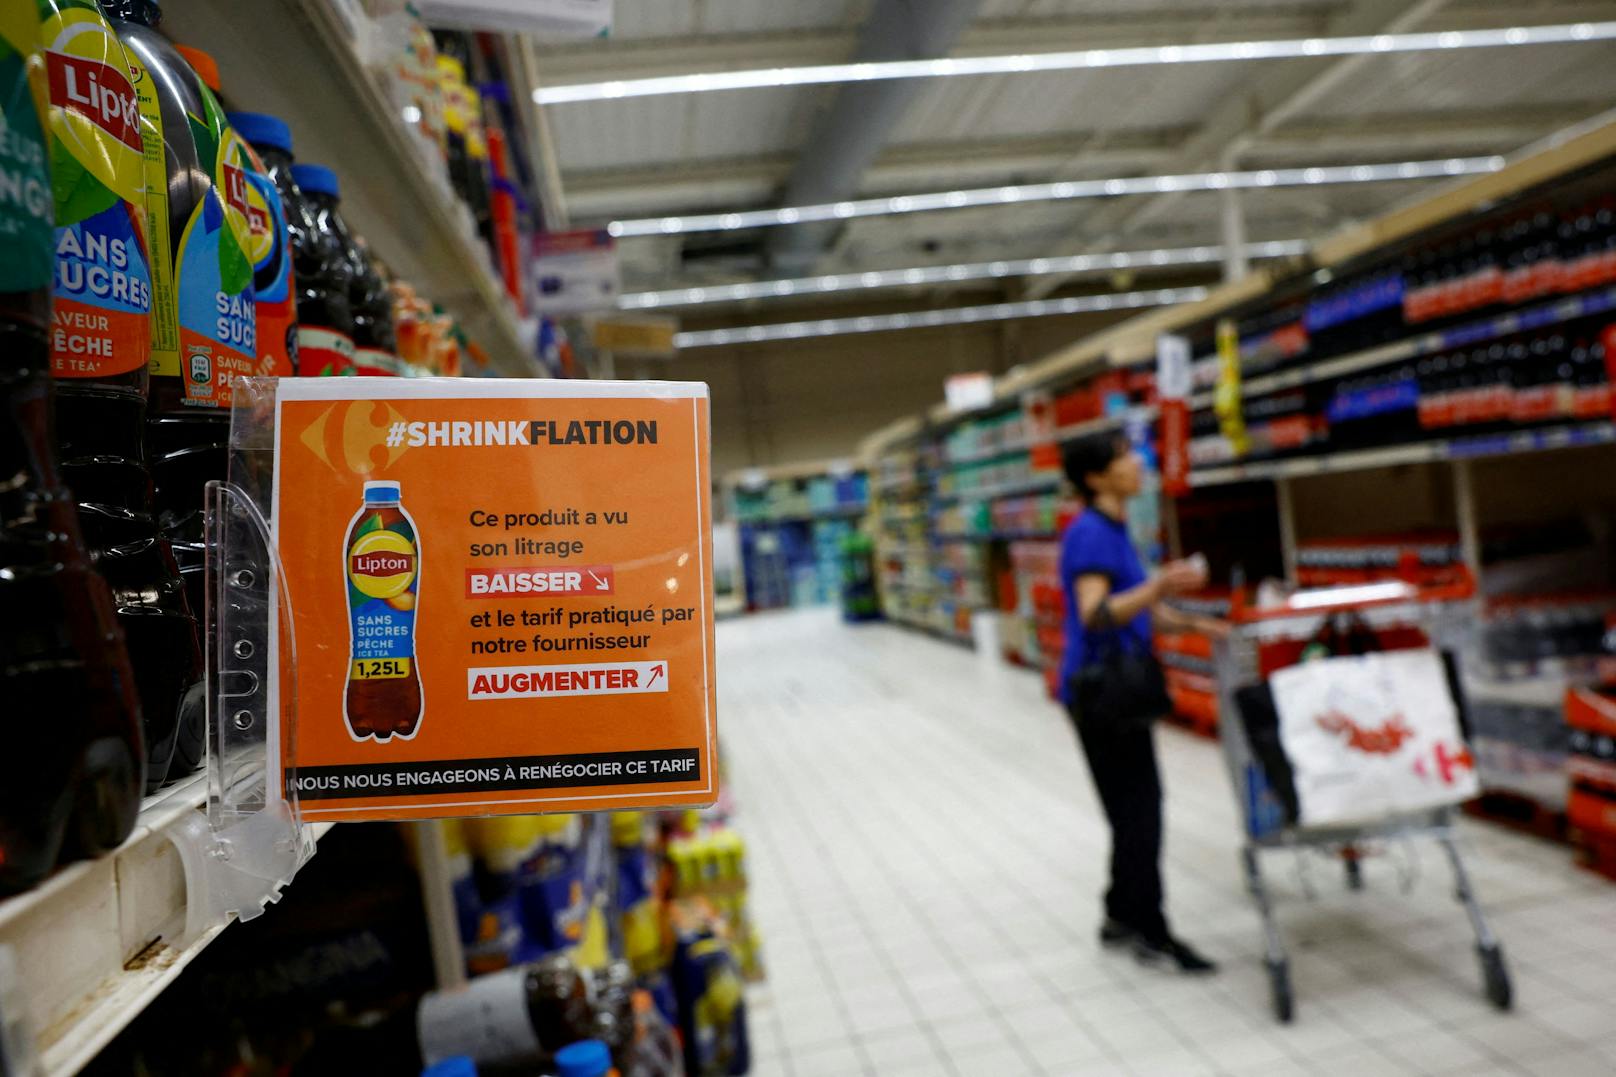 Die französische Supermarktkette <strong>Carrefour</strong> deckt nun mit diesen Warnschildern solch versteckte Preiserhöhungen im Regal auf.